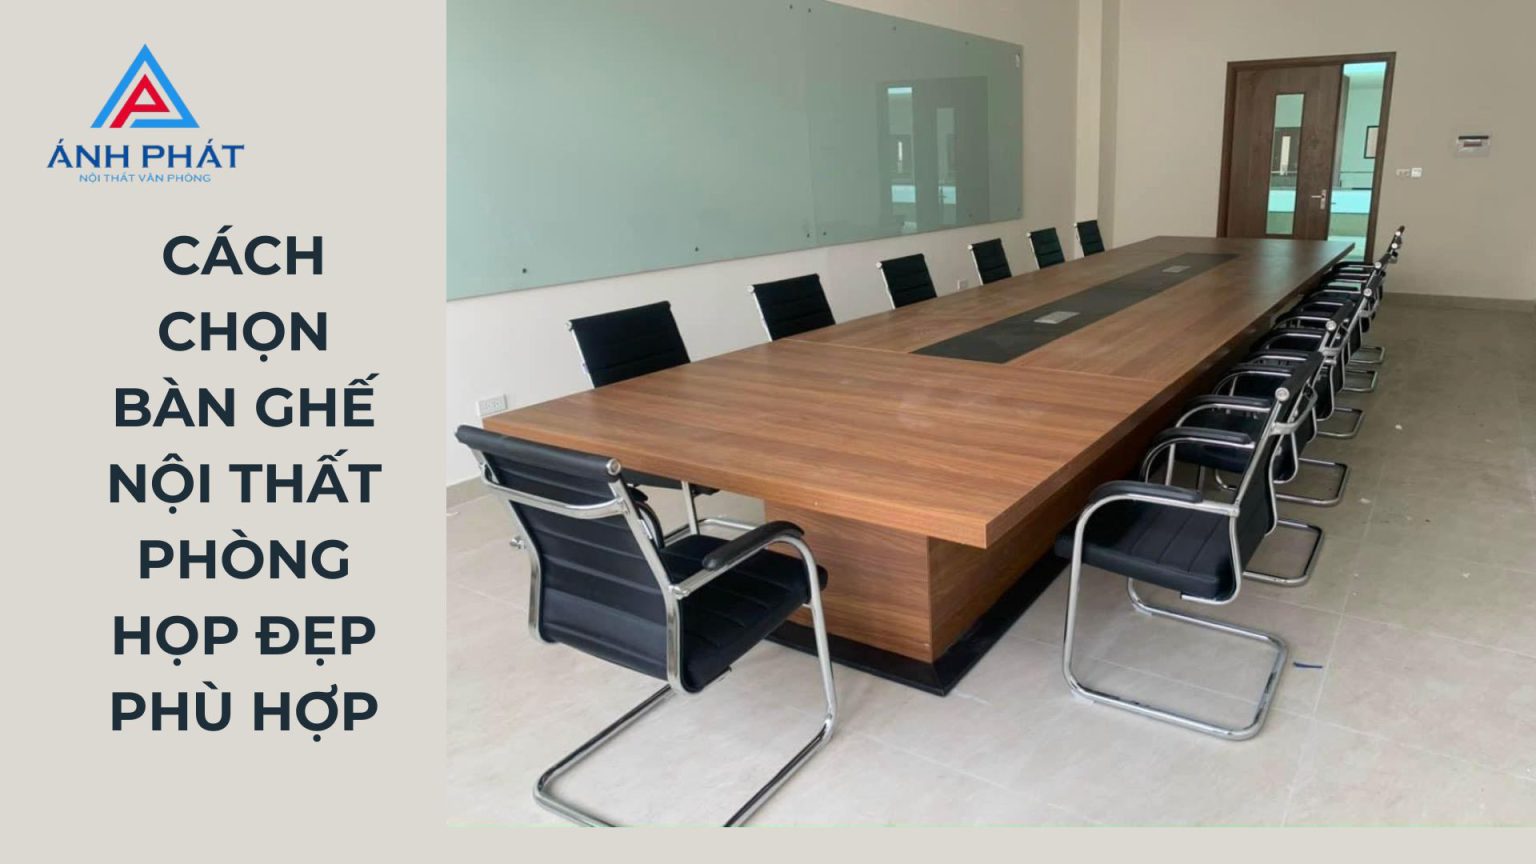 4+ Cách lựa chọn bàn ghế nội thất phòng họp đẹp hiện đại